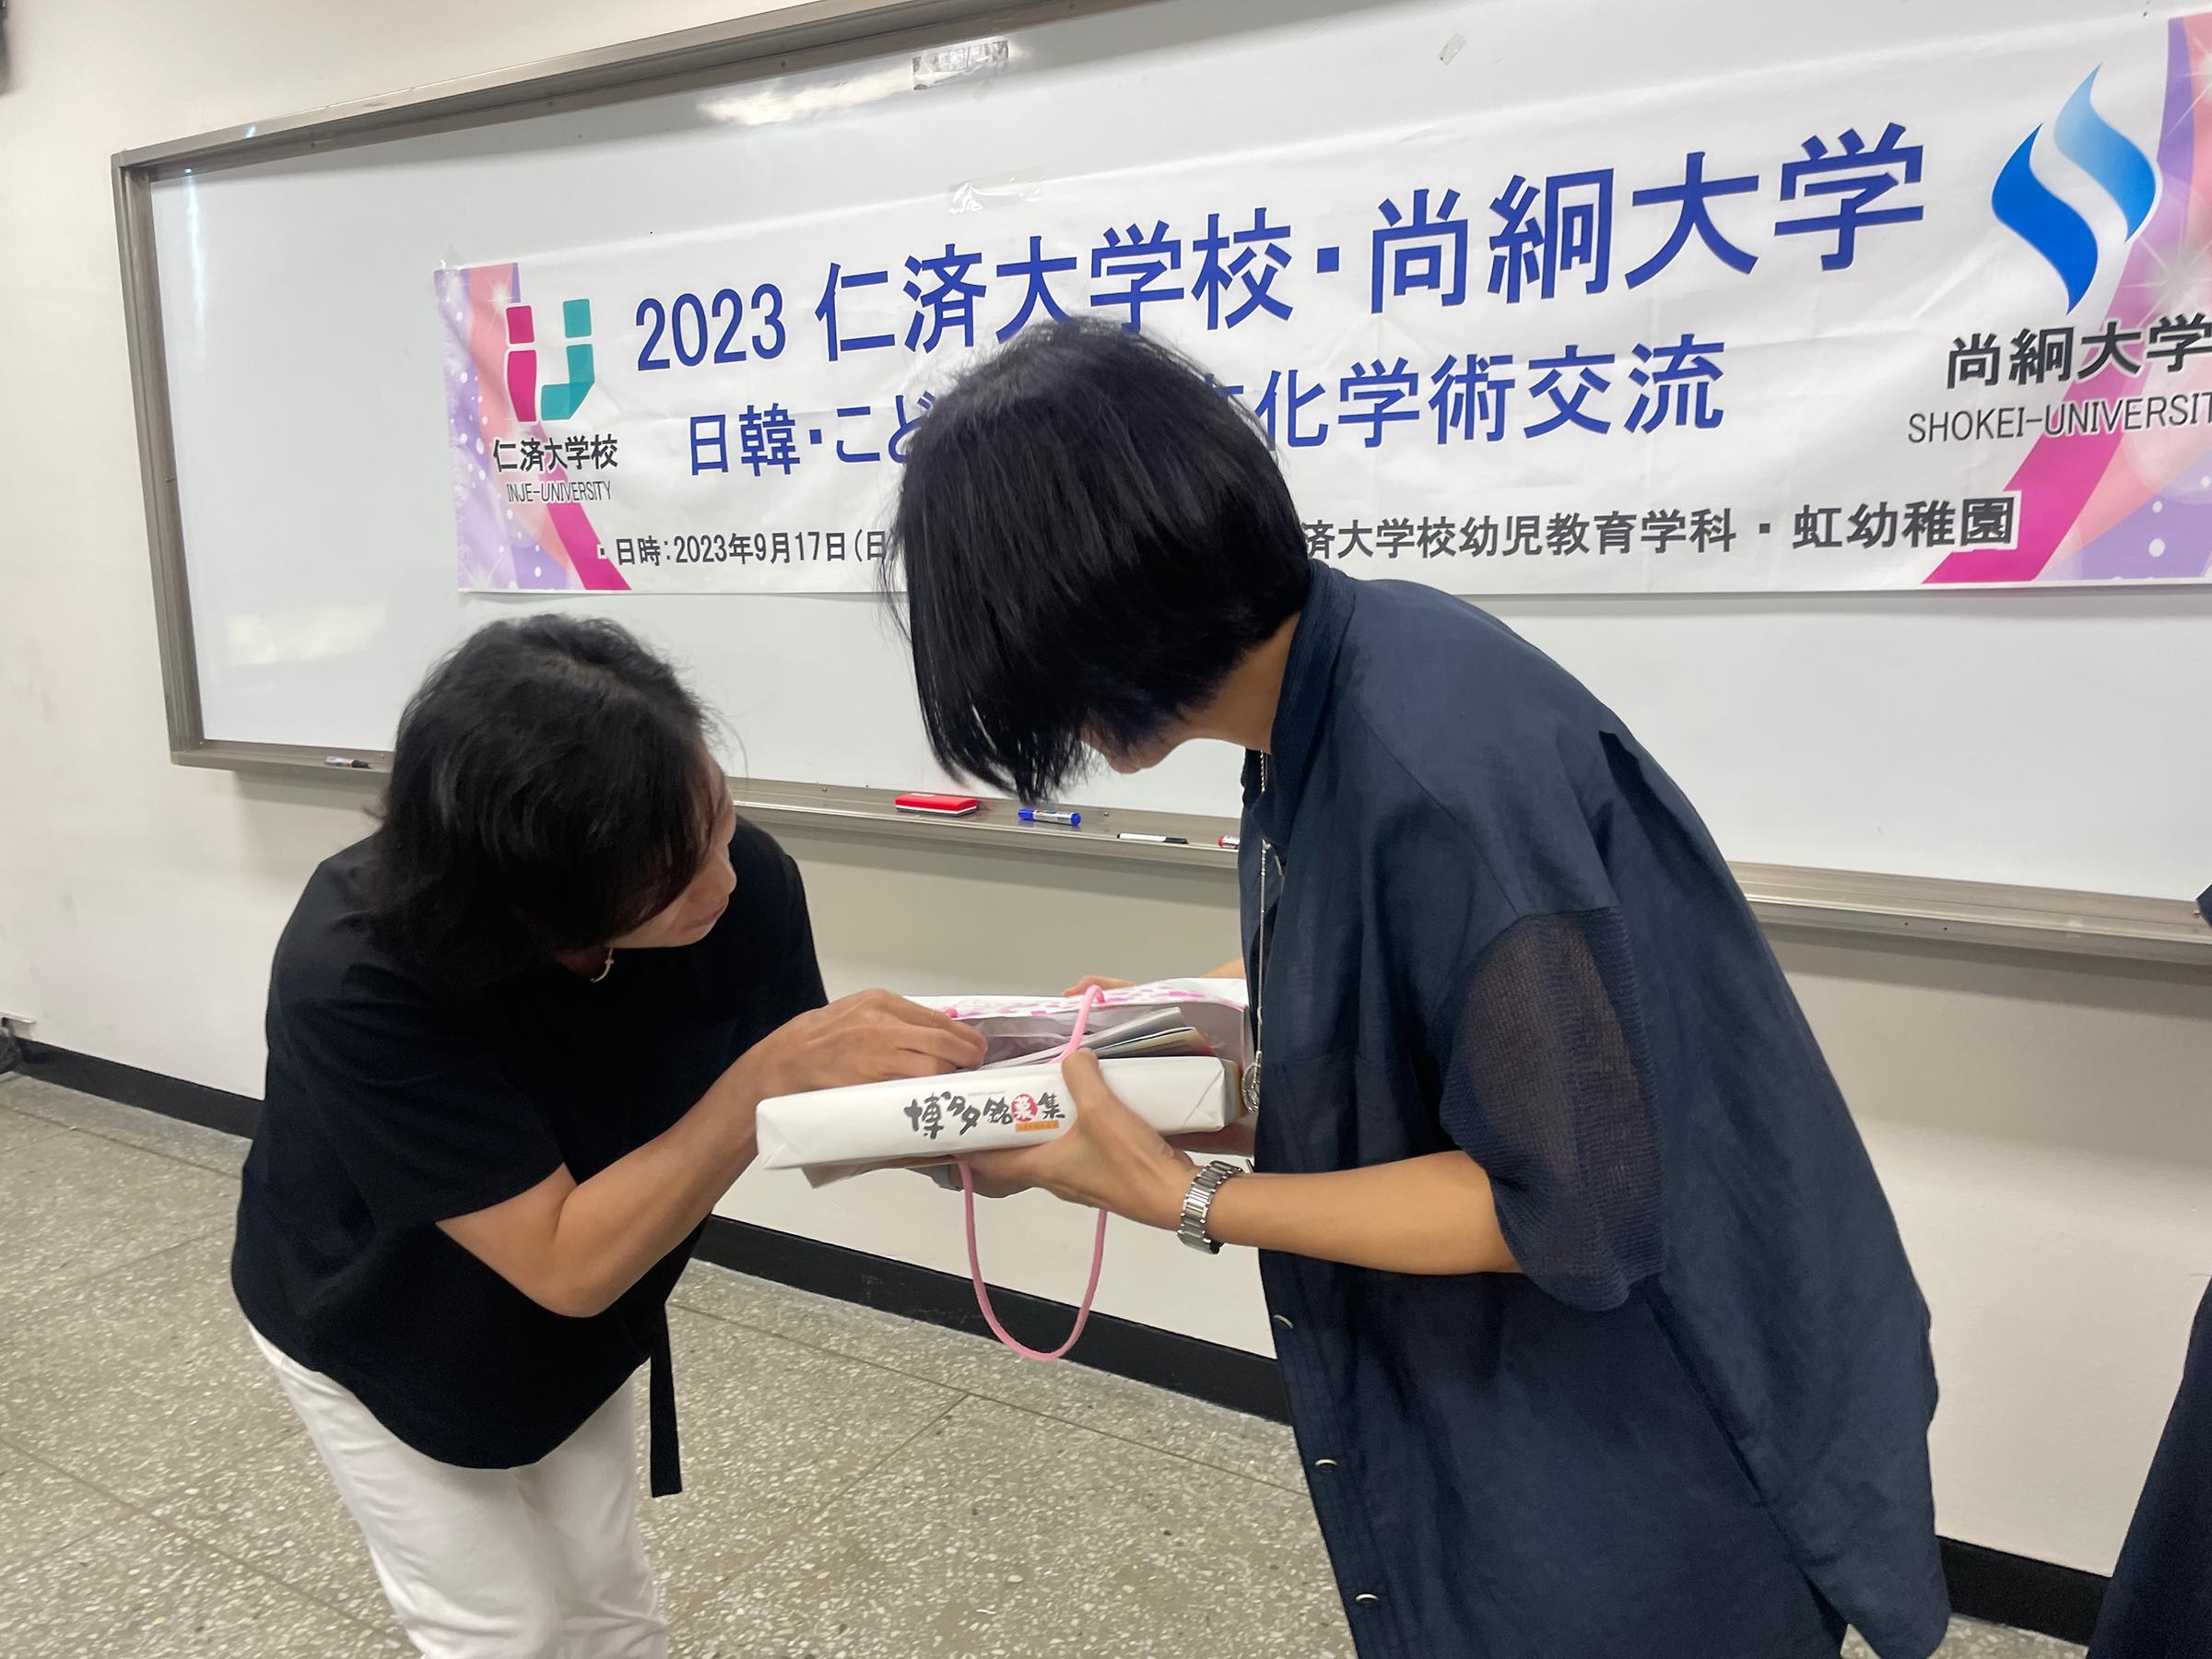 2023년 09월 18일 월요일  일본 쇼케이 대학 유아교육과 학생들과의 만남